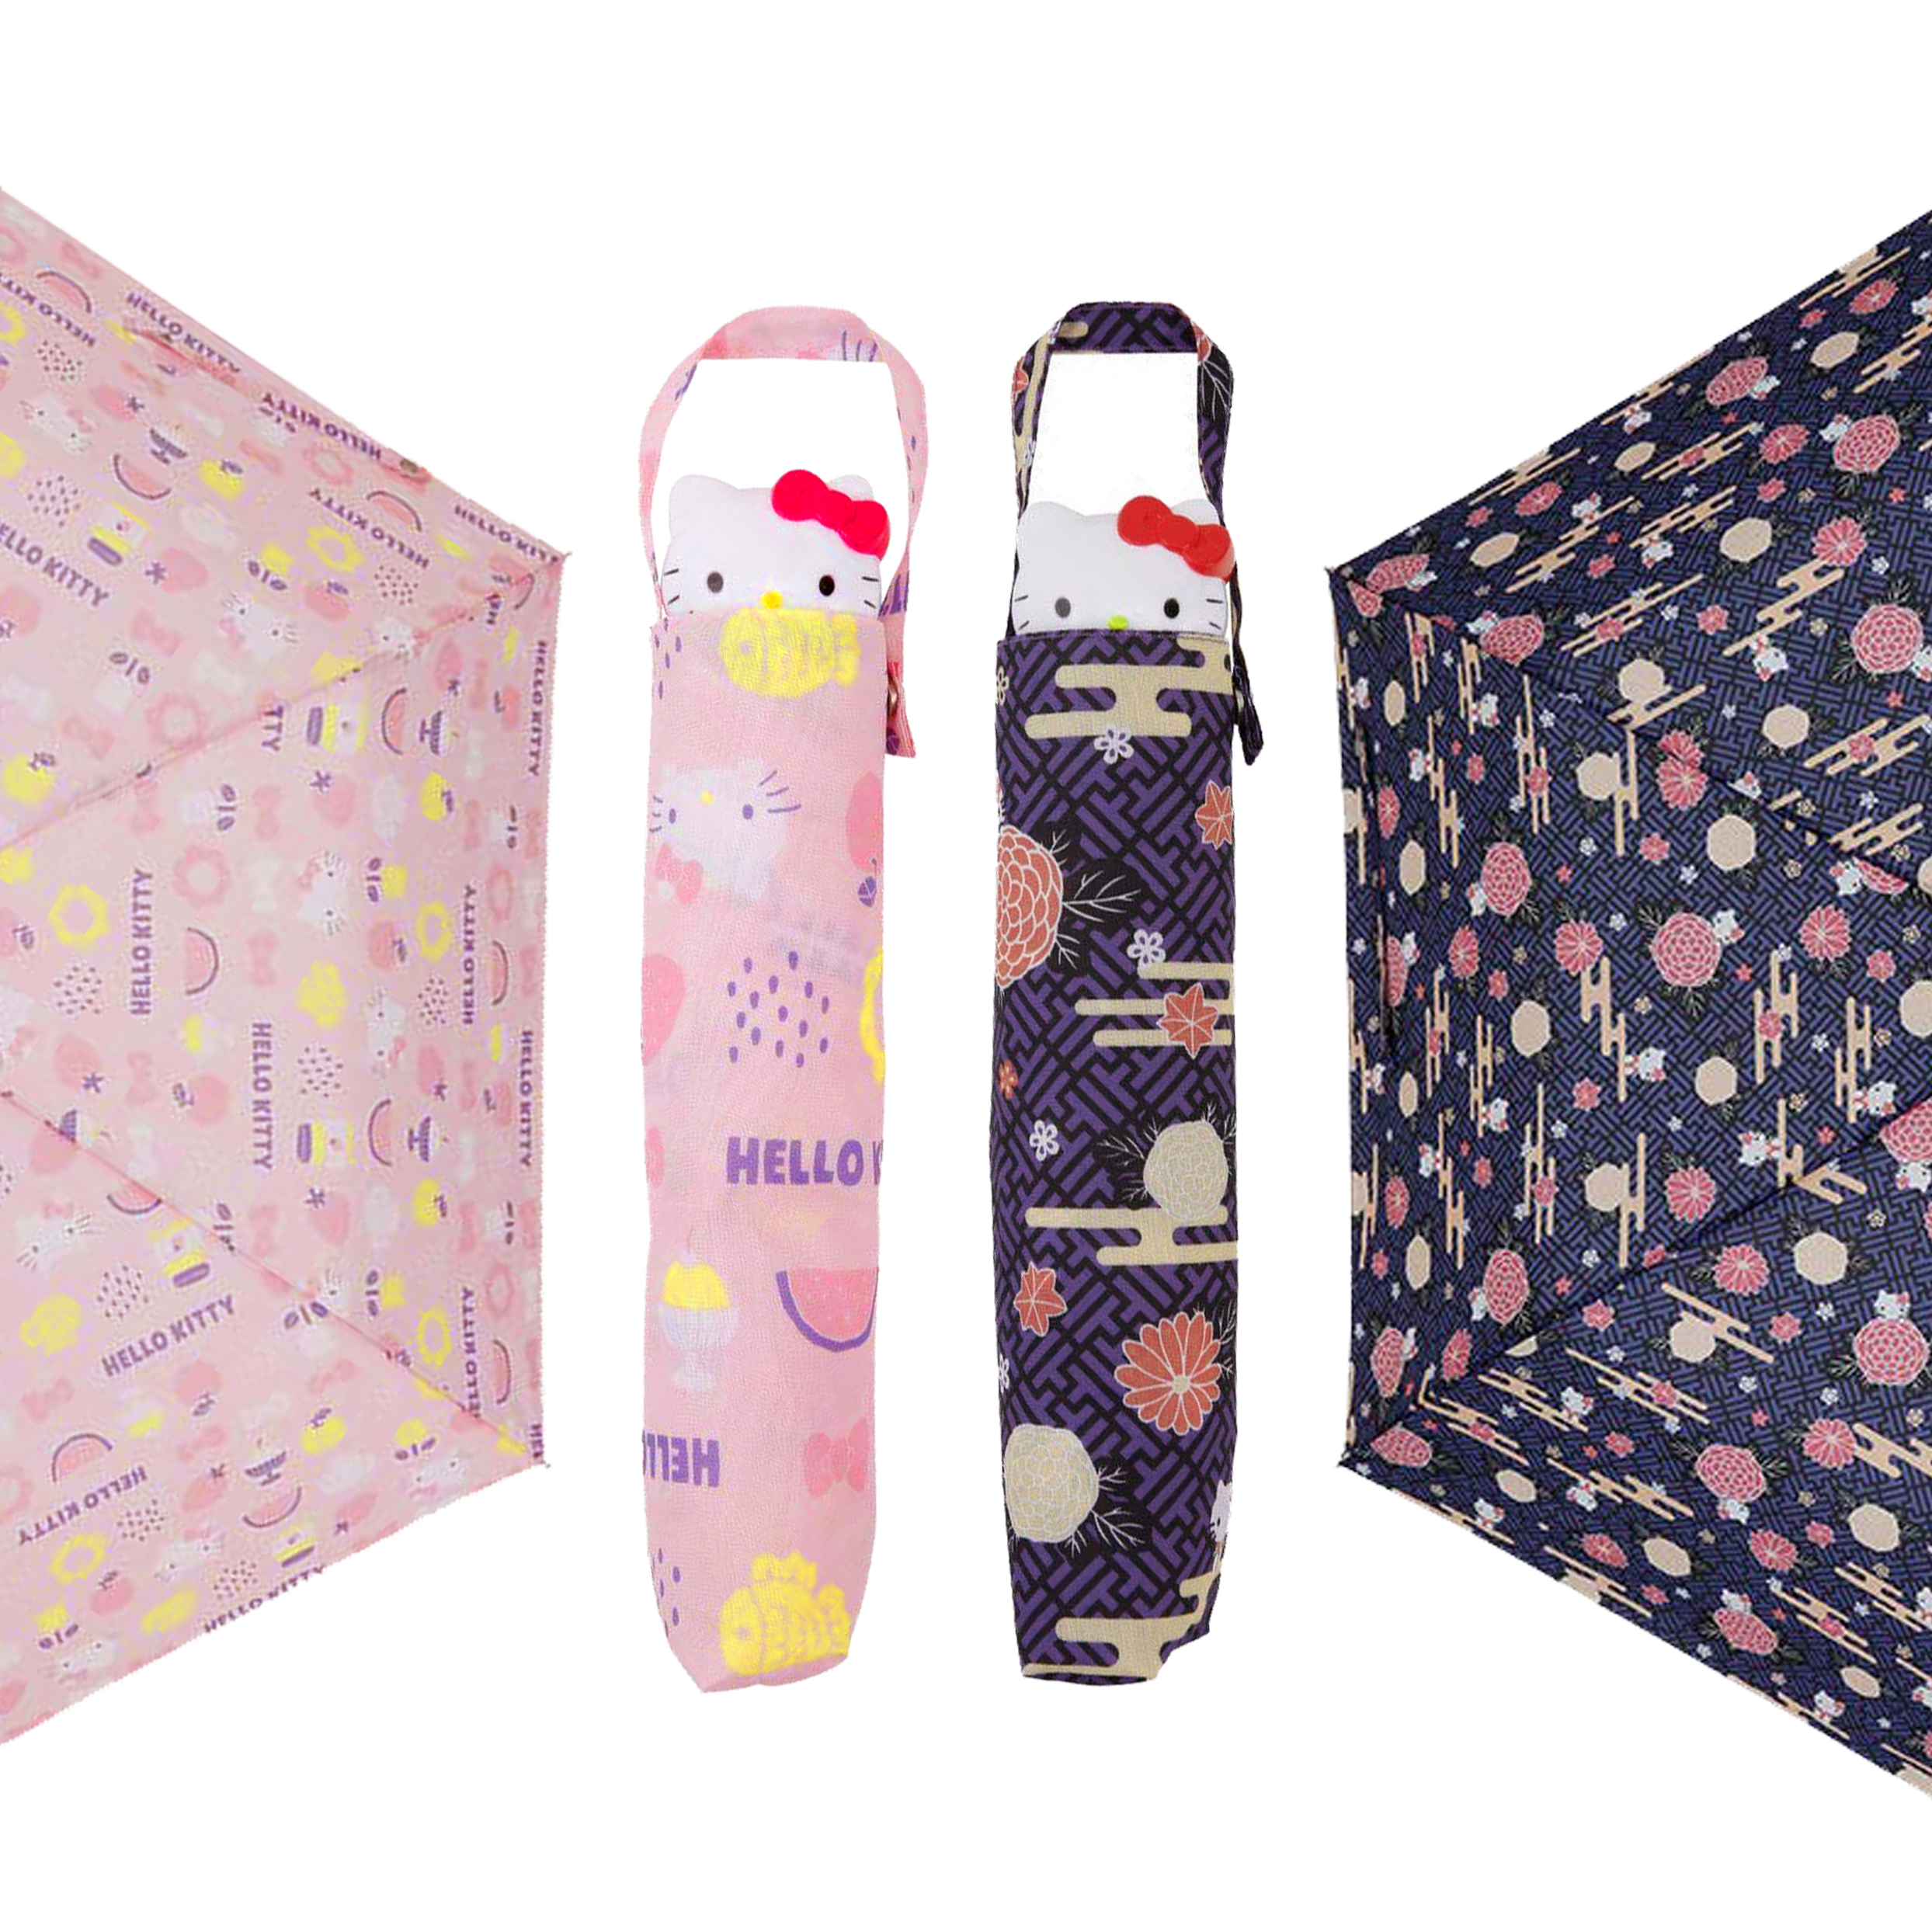 造型摺疊傘 三麗鷗 Hello Kitty 2款 手開式 抗UV 晴雨兩用 雨傘 日本進口正版授權